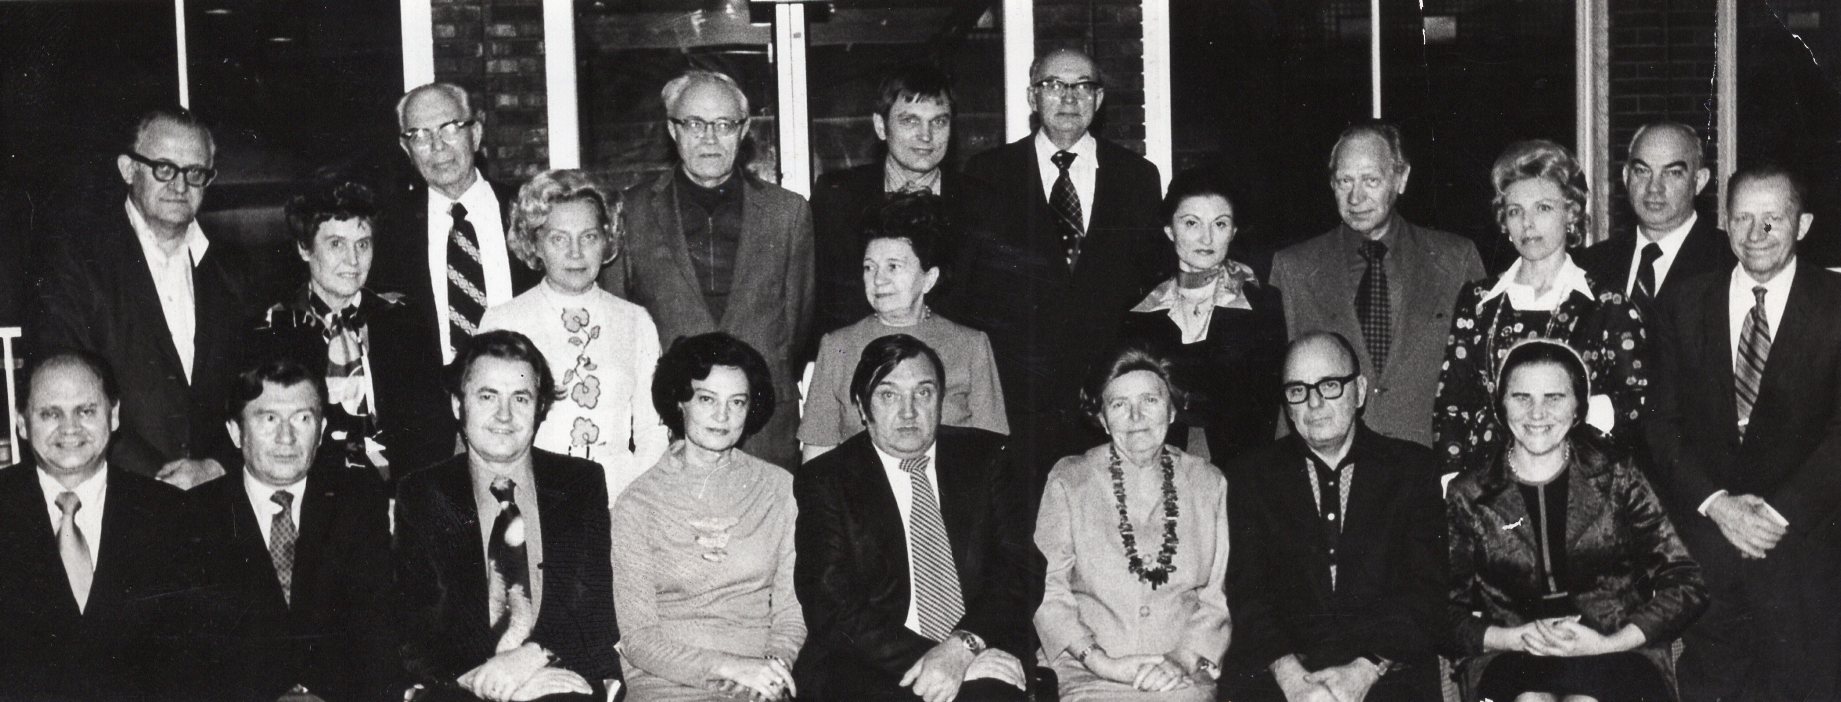 Lietuvių fondo posėdis. V. Būtėnas sėdi antras iš kairės. Čikaga, 1975-11-18. V. Noreikos nuotrauka. MLLM P60692